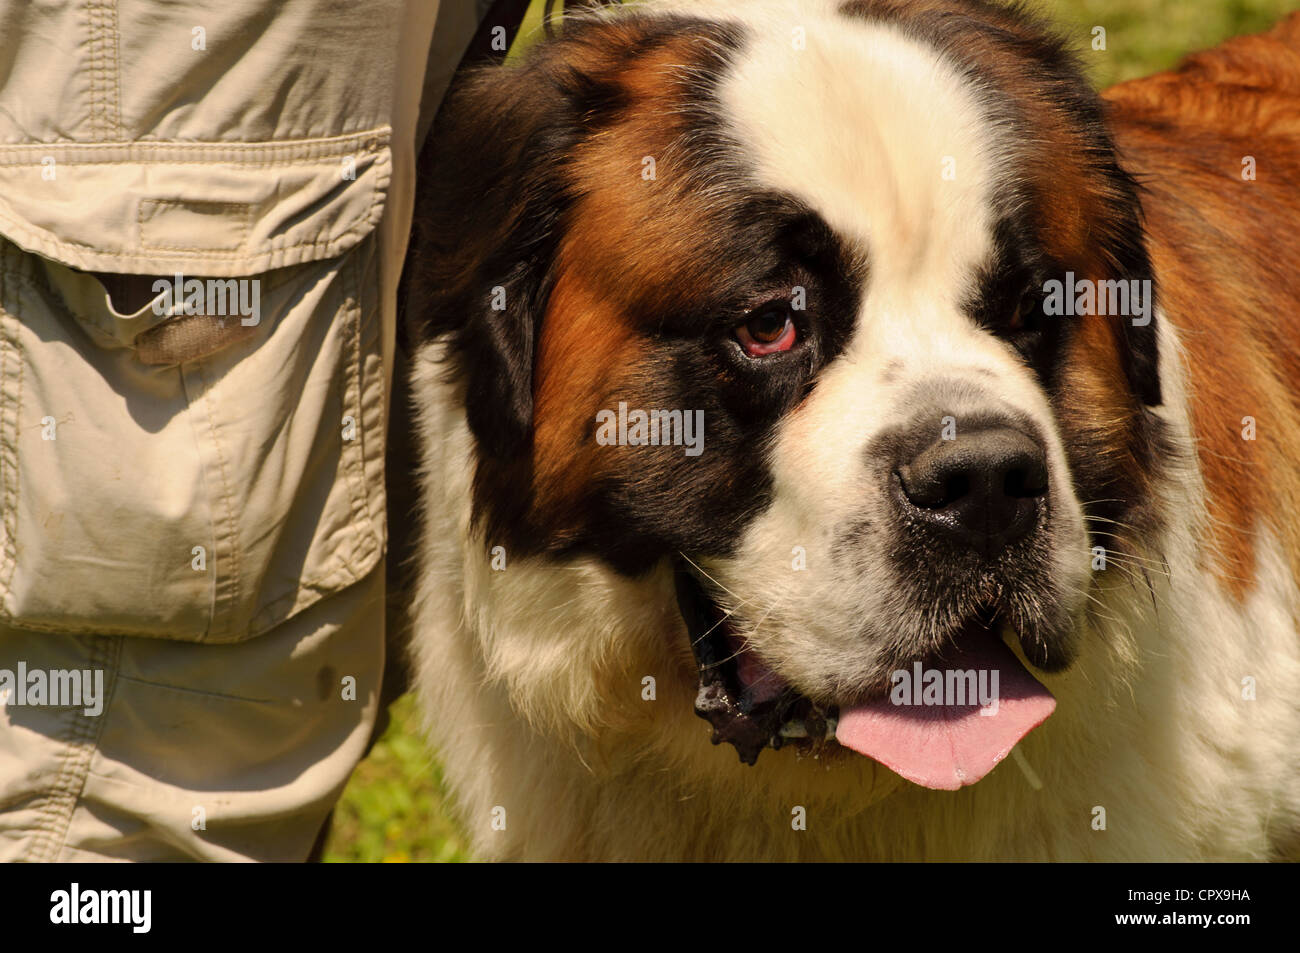 San bernardo raza de perro fotografías e imágenes alta resolución Alamy